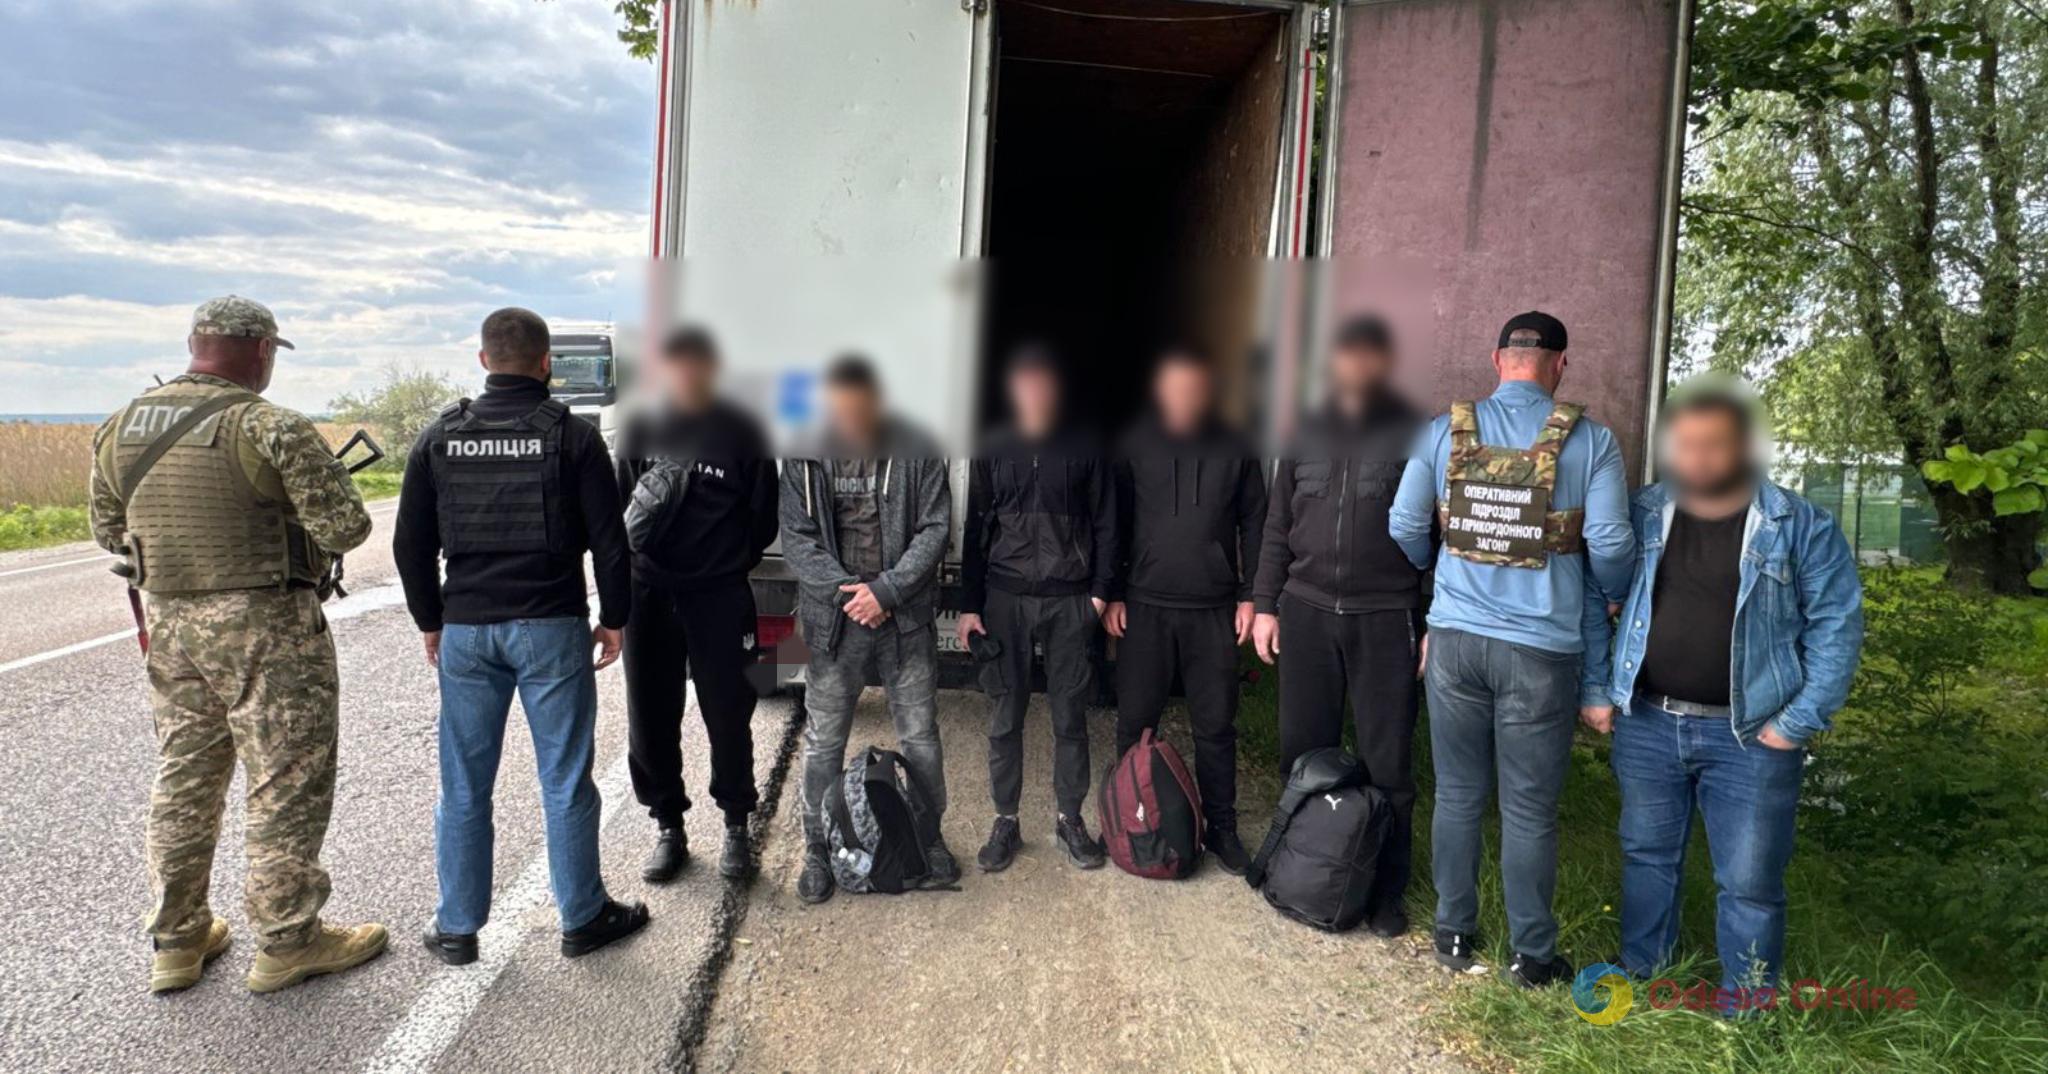 Одеська область: у причепі вантажівки знайшли п’ятьох втікачів з України